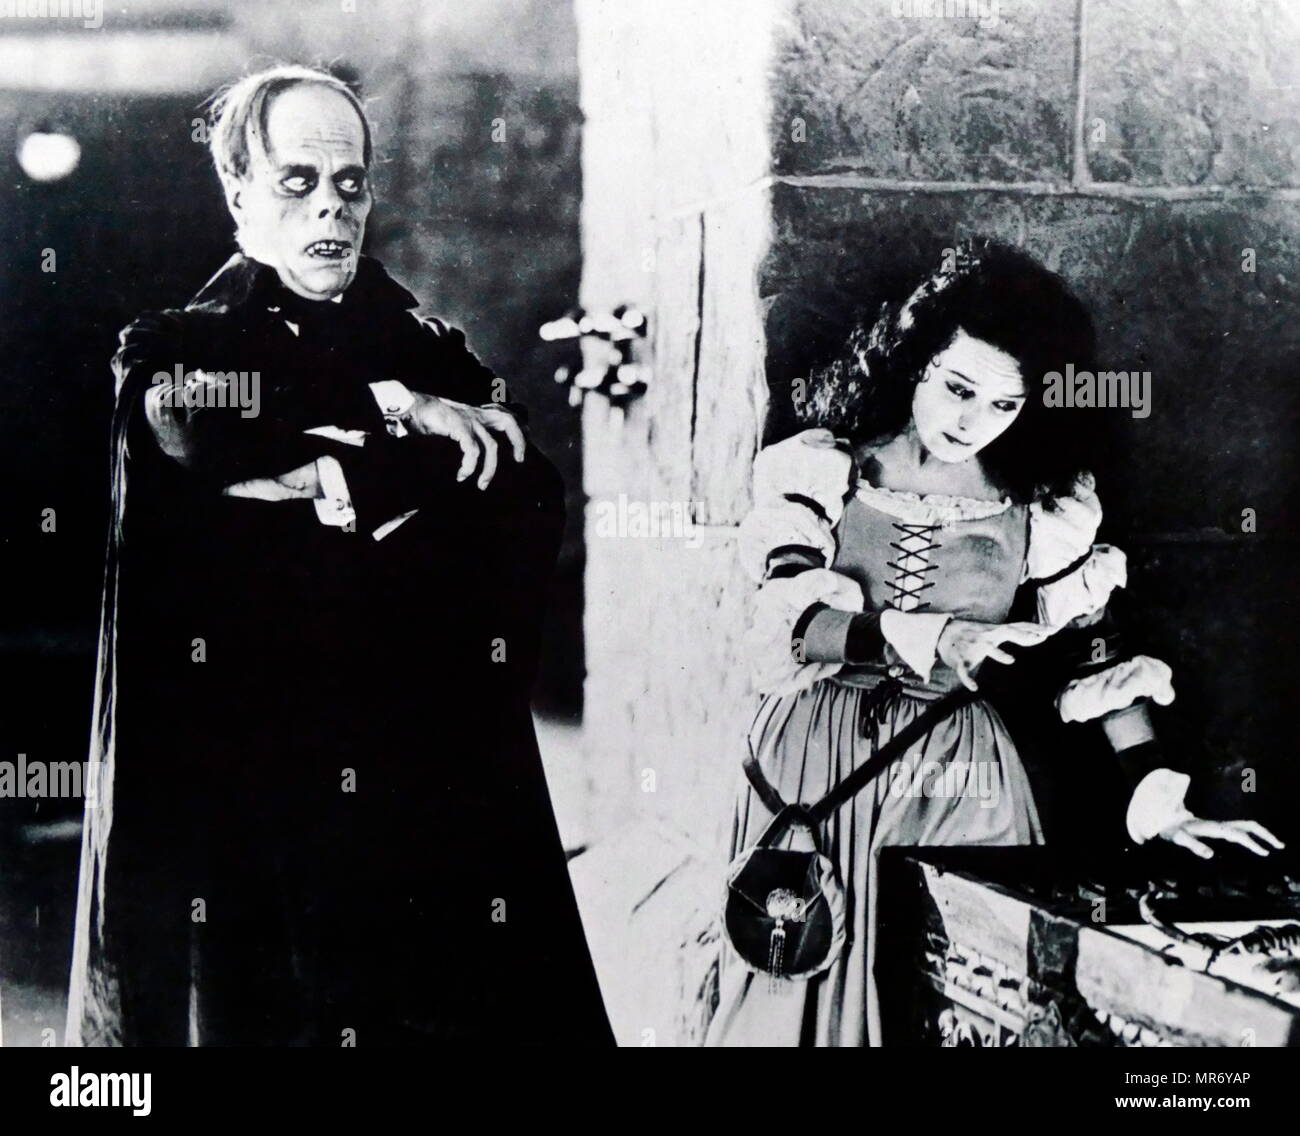 Lon Chaney und Mary Philbin in "Das Phantom der Oper" eine 1925 amerikanische Silent horror Verfilmung von Gaston Leroux von 1910, Roman, von Rupert Julian Regie und Hauptdarsteller Lon Chaney sen. in der Titelrolle. Lon Chaney (1883-1930), amerikanischer Bühnen- und Filmschauspieler, Make-up-Künstler, Regisseur und Drehbuchautor. Für seine Charakterisierungen der gefoltert, oft grotesk und elenden Charaktere bekannt und seine bahnbrechenden Kunstfertigkeit mit Make-up. Maria Loretta Philbin (1902-1993), US-amerikanische Schauspielerin der Stummfilmära Stockfoto